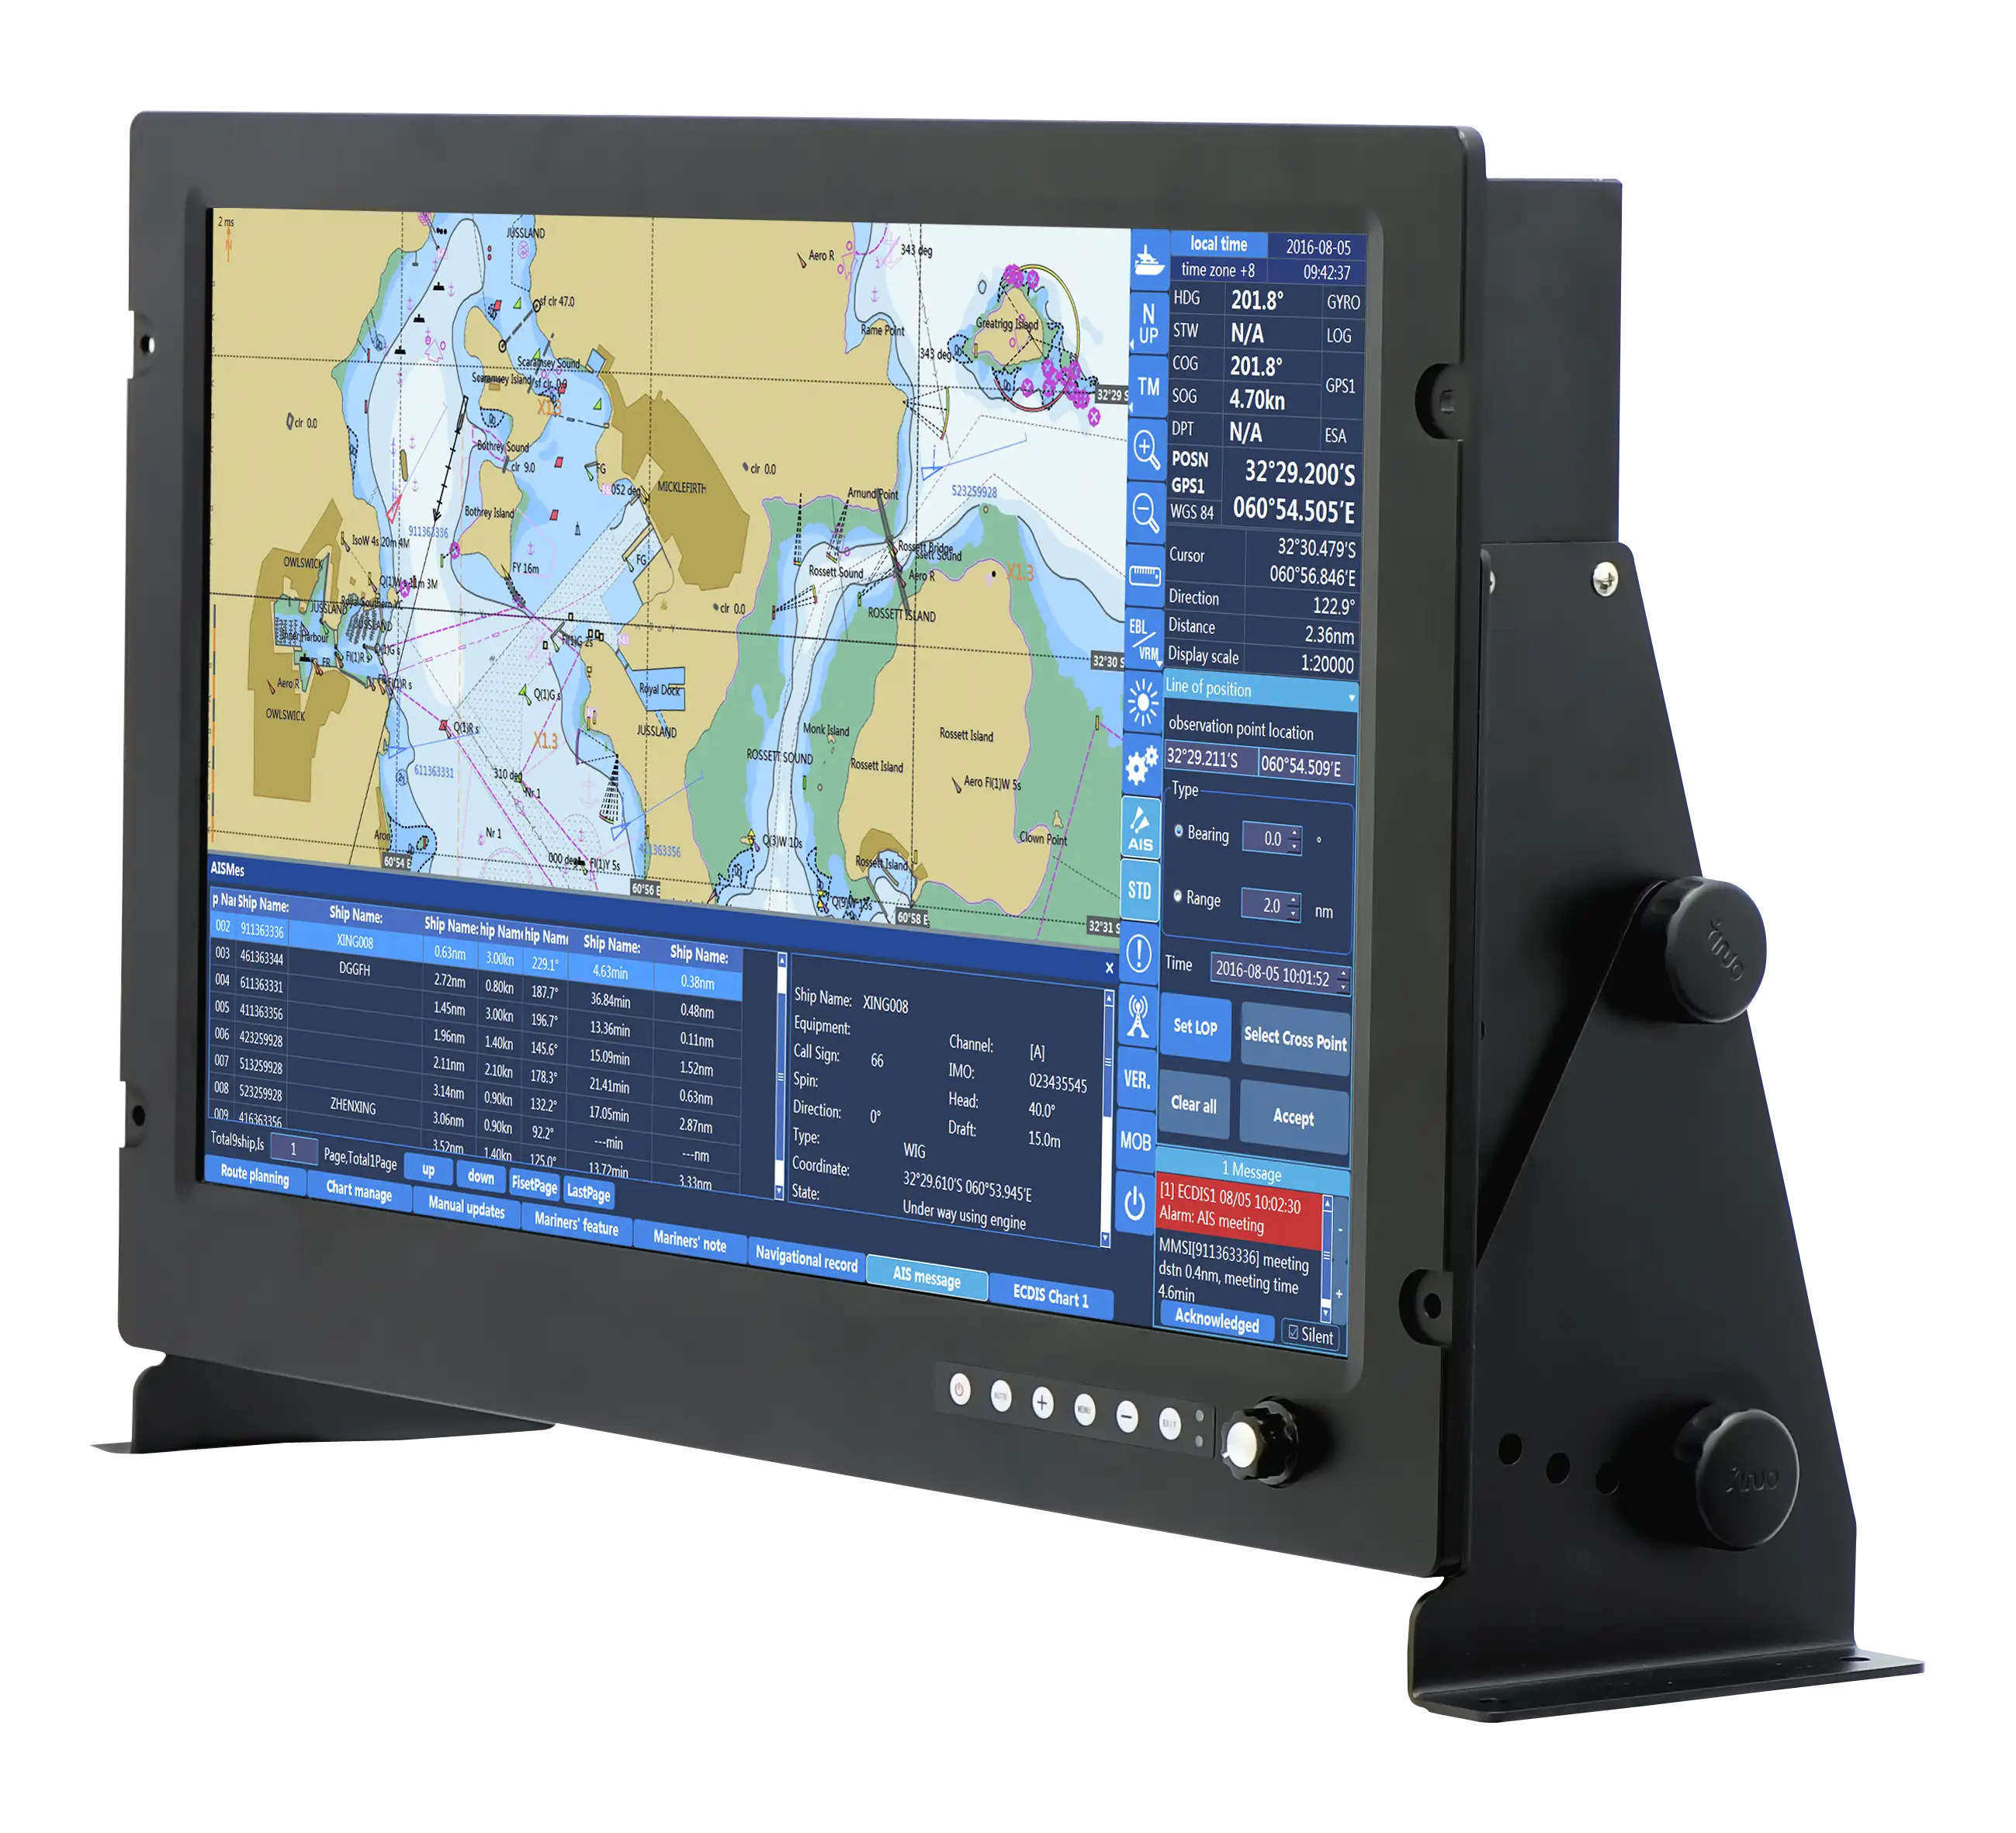 XINUO 19 "Display Marine LCD-Monitor für Radar/Sonar/Fisch finder/Echos under/Kompass/Plotter